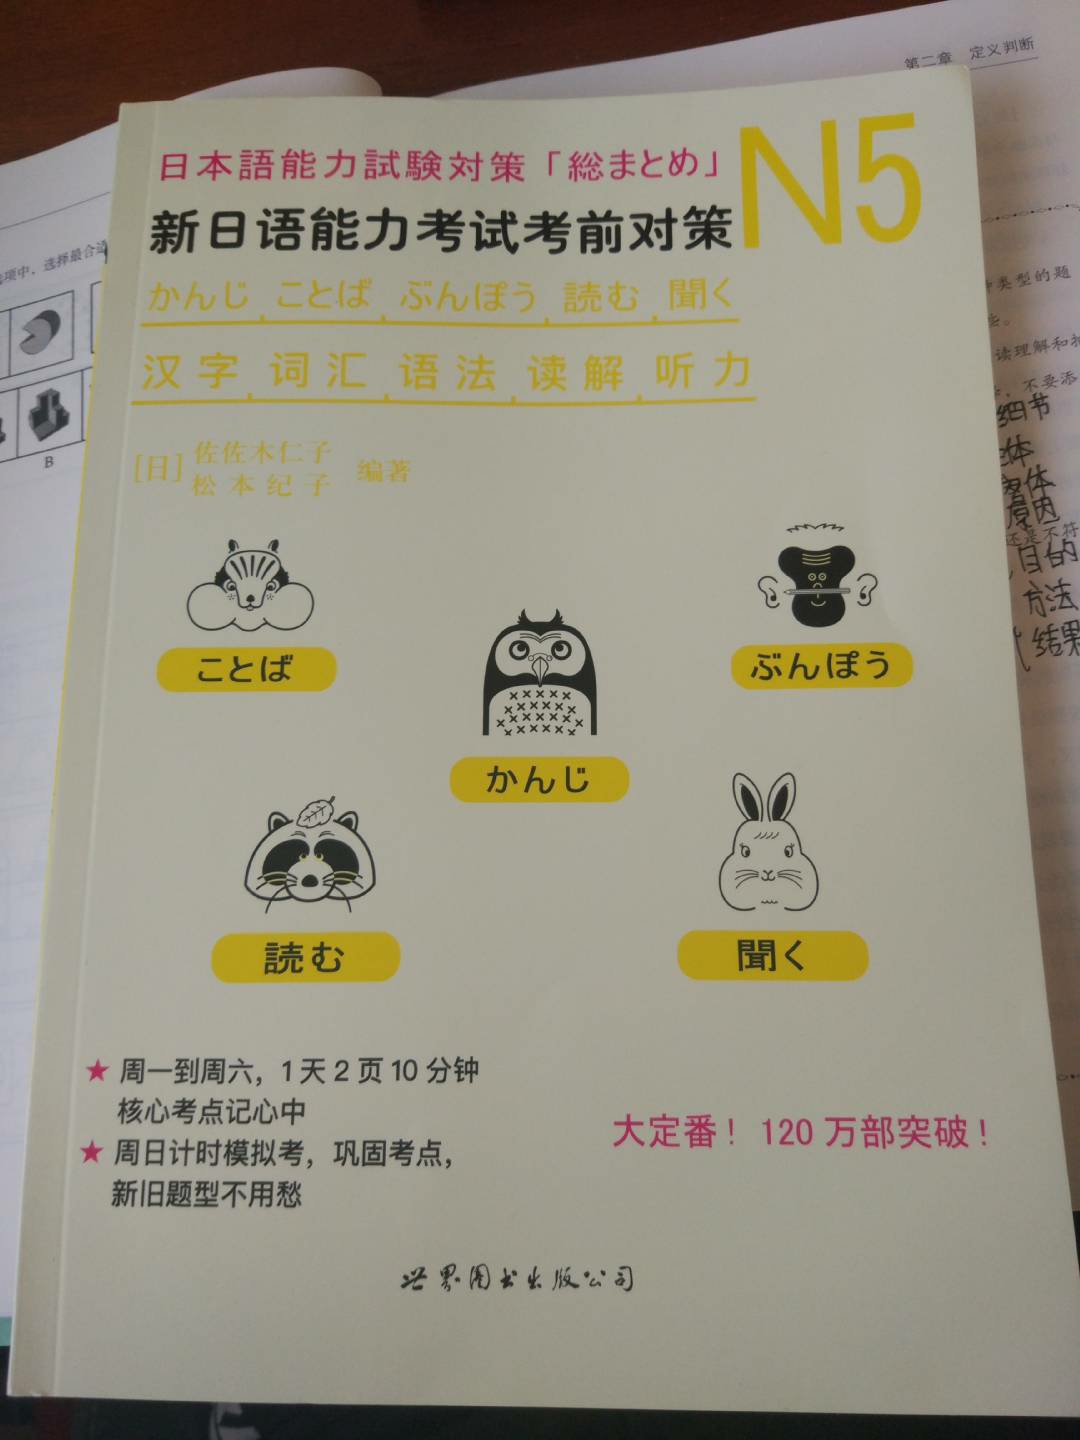 这个书还是很不错的，买回来学习日语使用的。